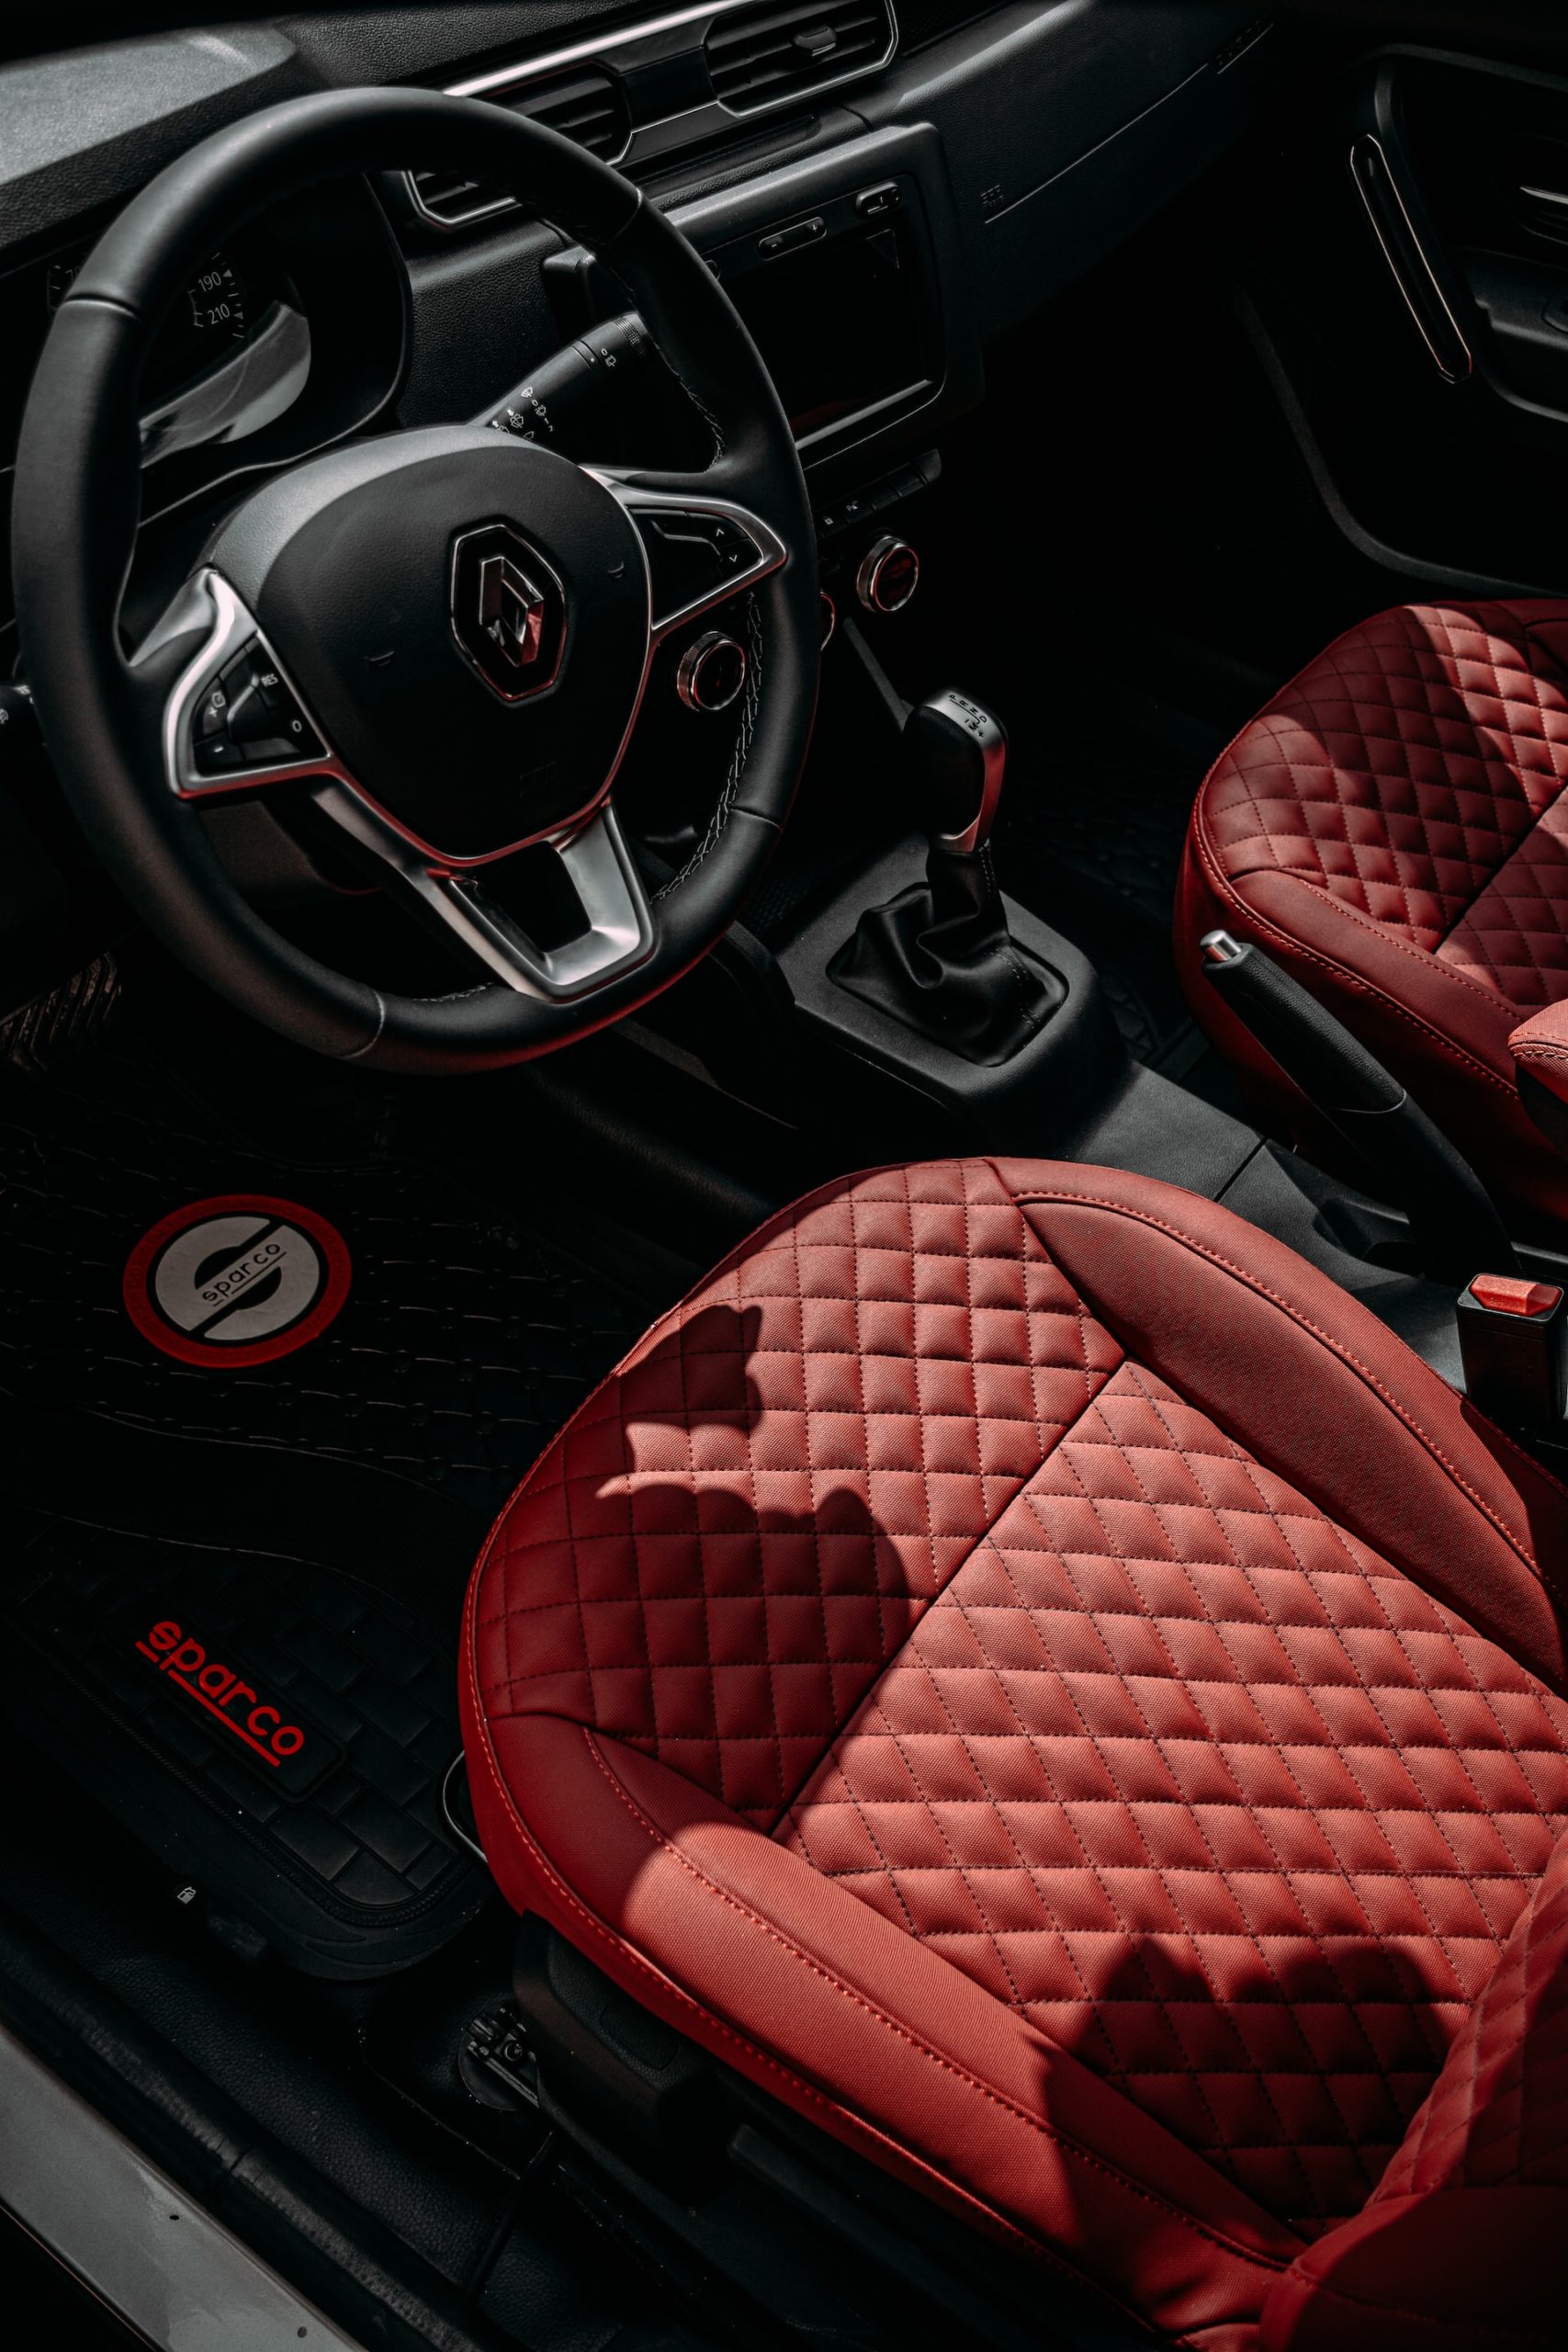 Interior of luxury car.